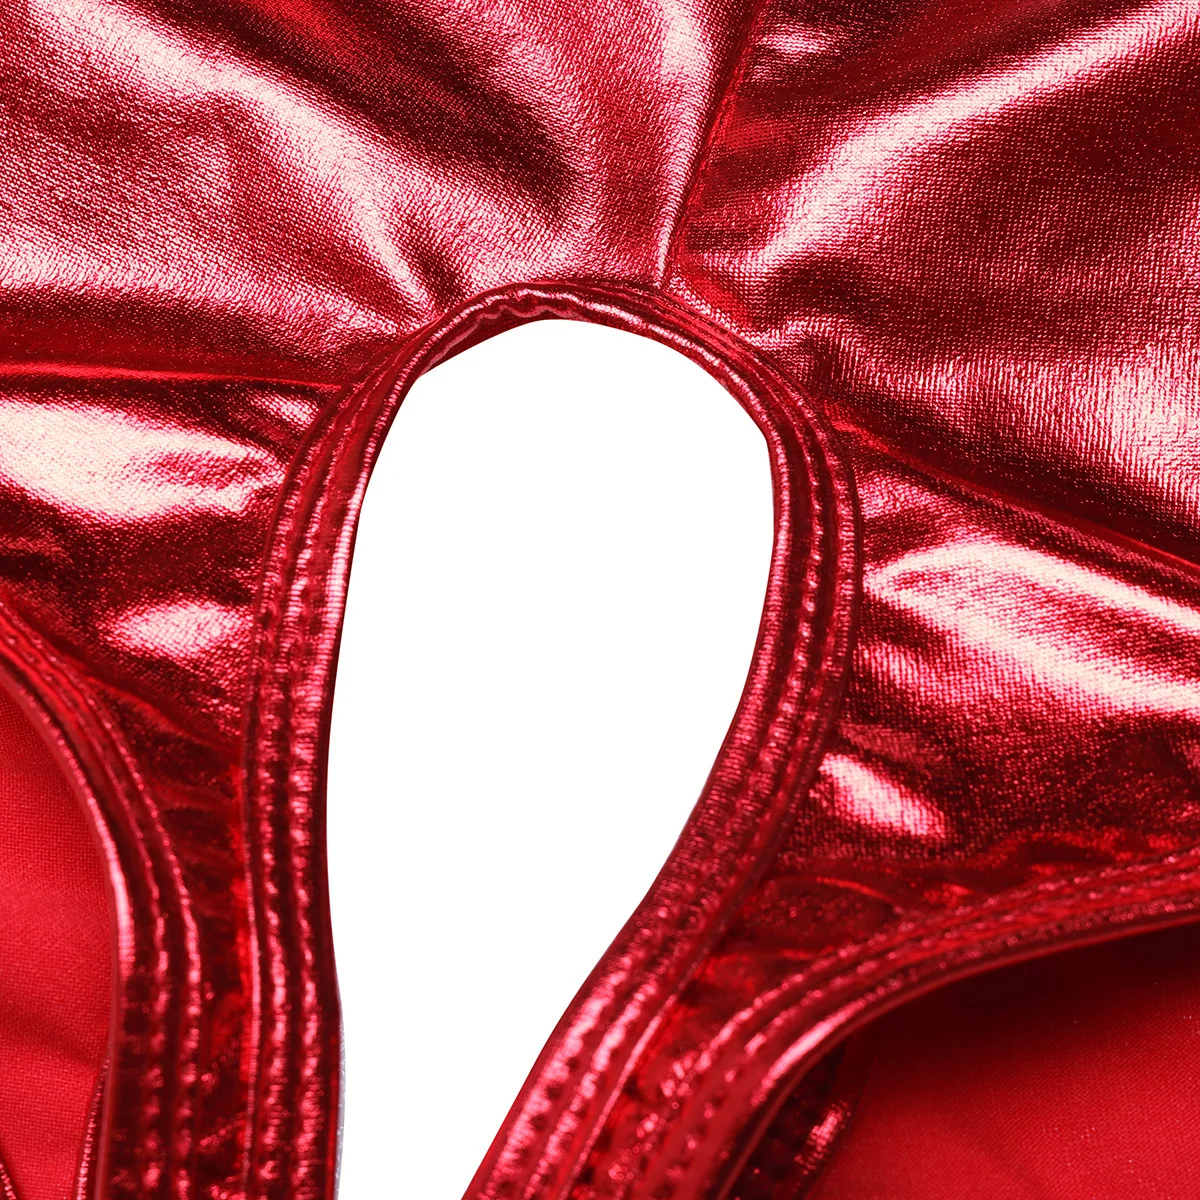 ıEFiEL Sıcak Clubwear kadın İç Çamaşırı Wetlook Suni Deri Crotchless Açık Popo Seksi Külot Bikini Kısa İç Çamaşırı Külot Görüntü 4